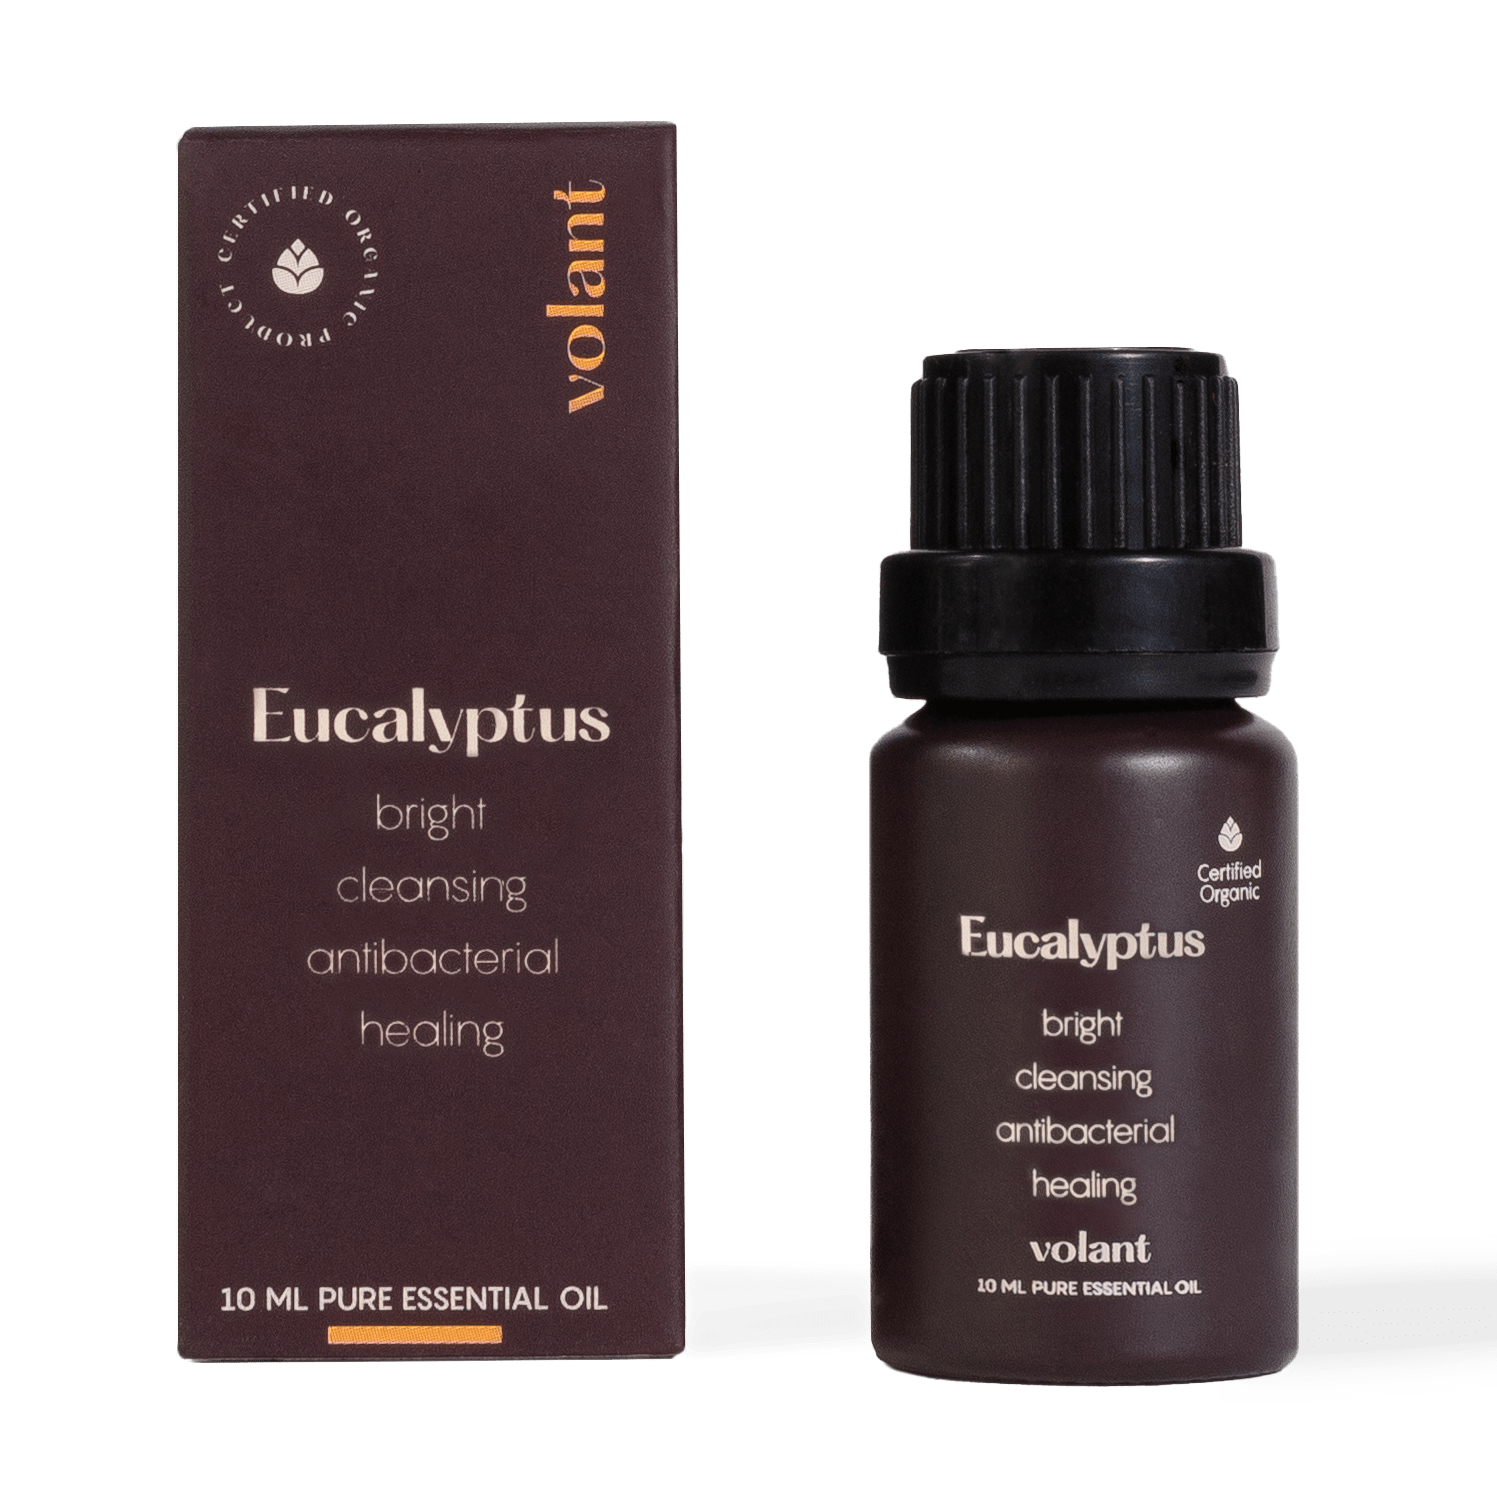 Eucalyptus Pure Essential Oil – Jurlique US